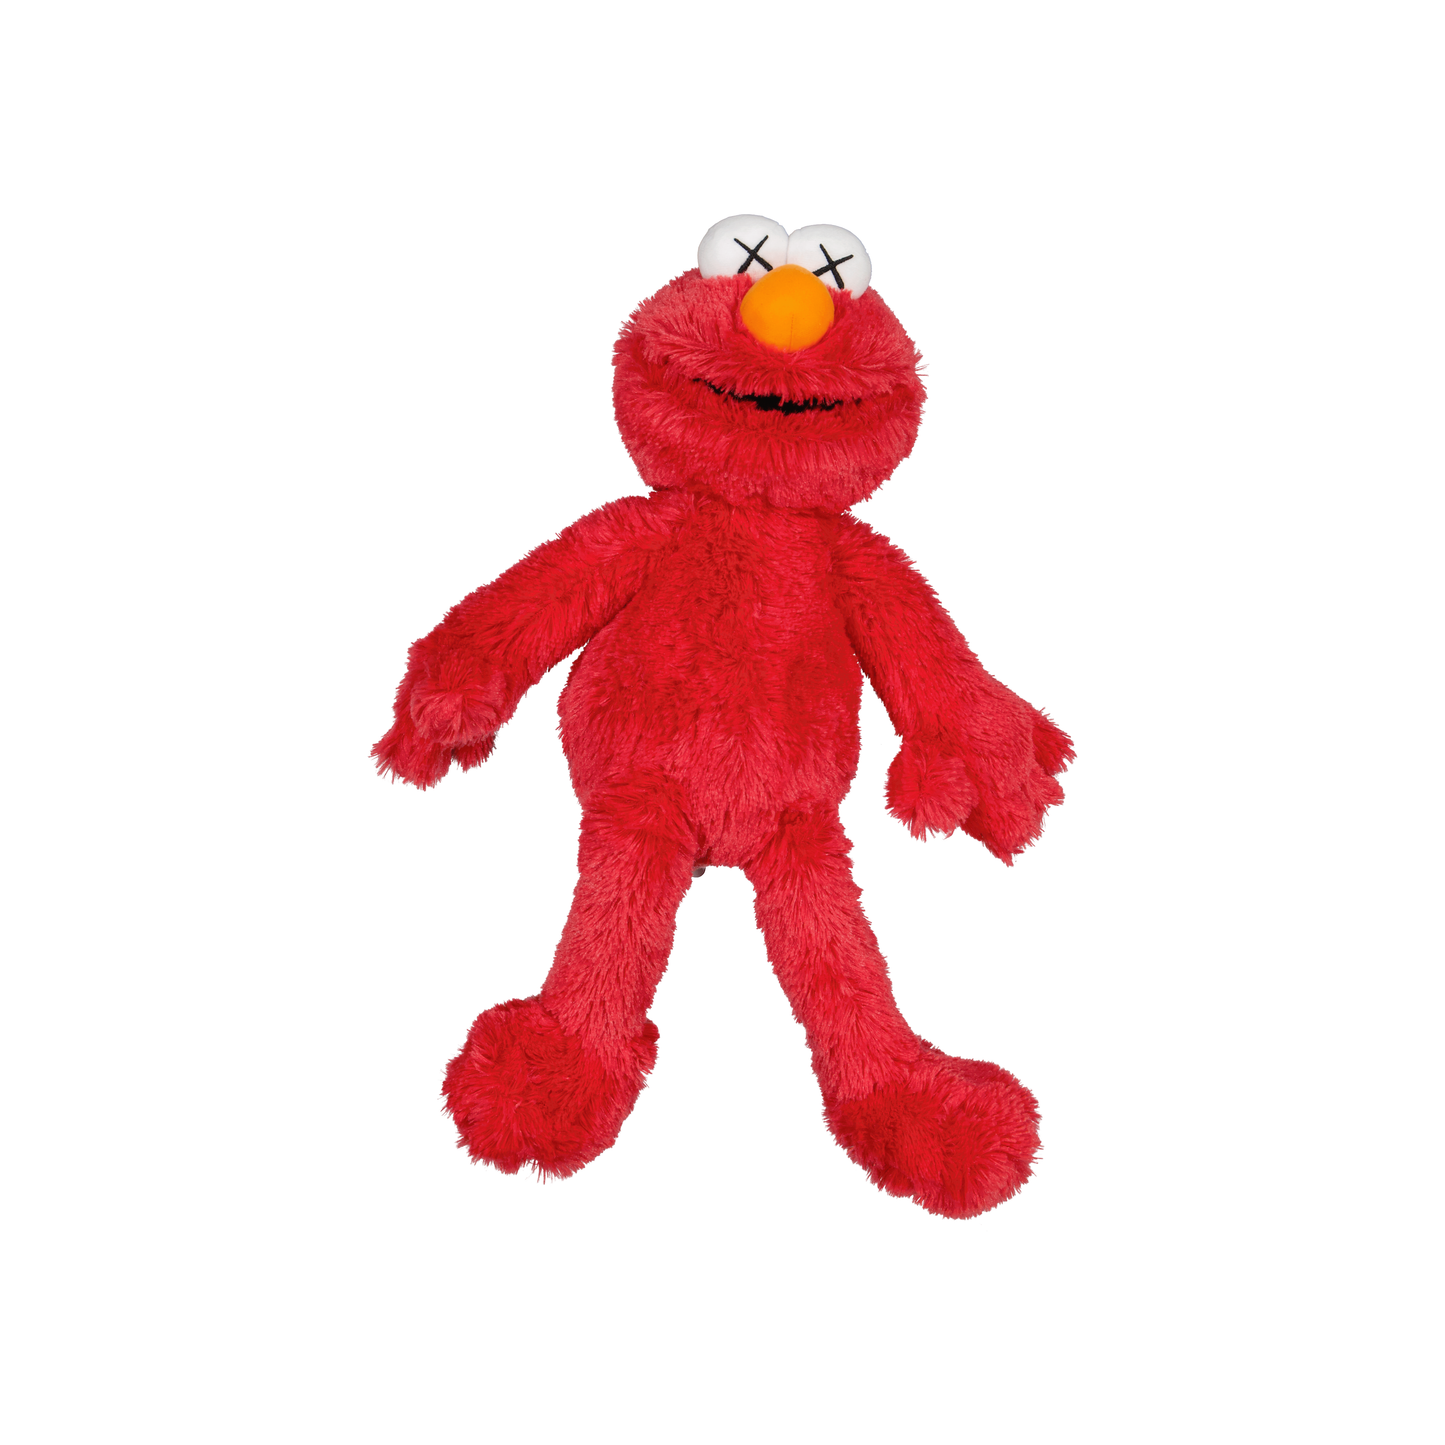 KAWS Sesame Street Uniqlo Elmo Plush Toy